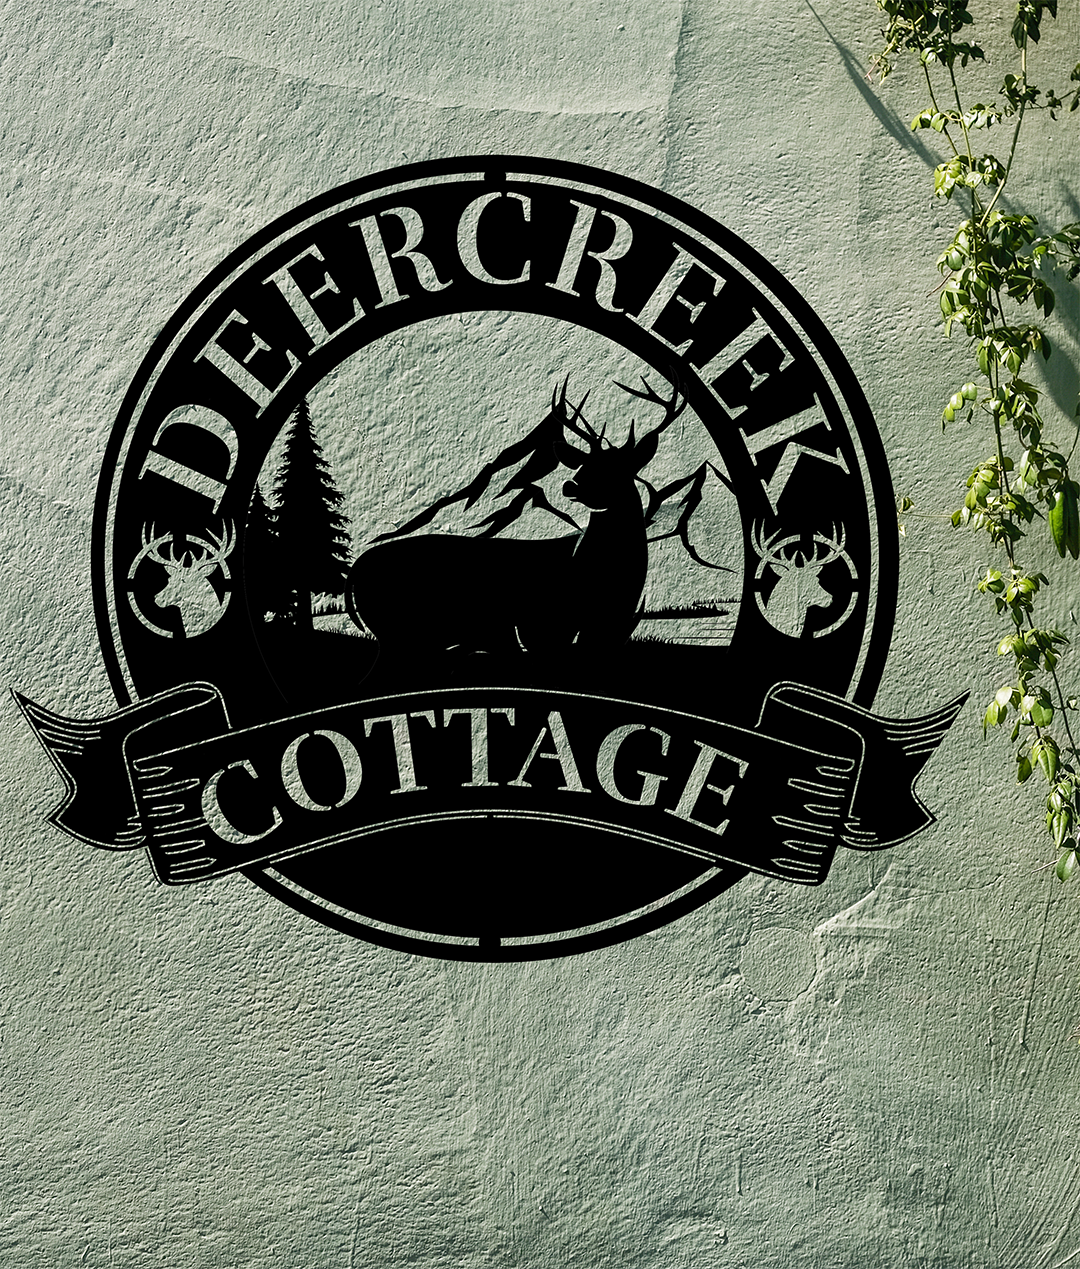 DeerCreek Cottage work